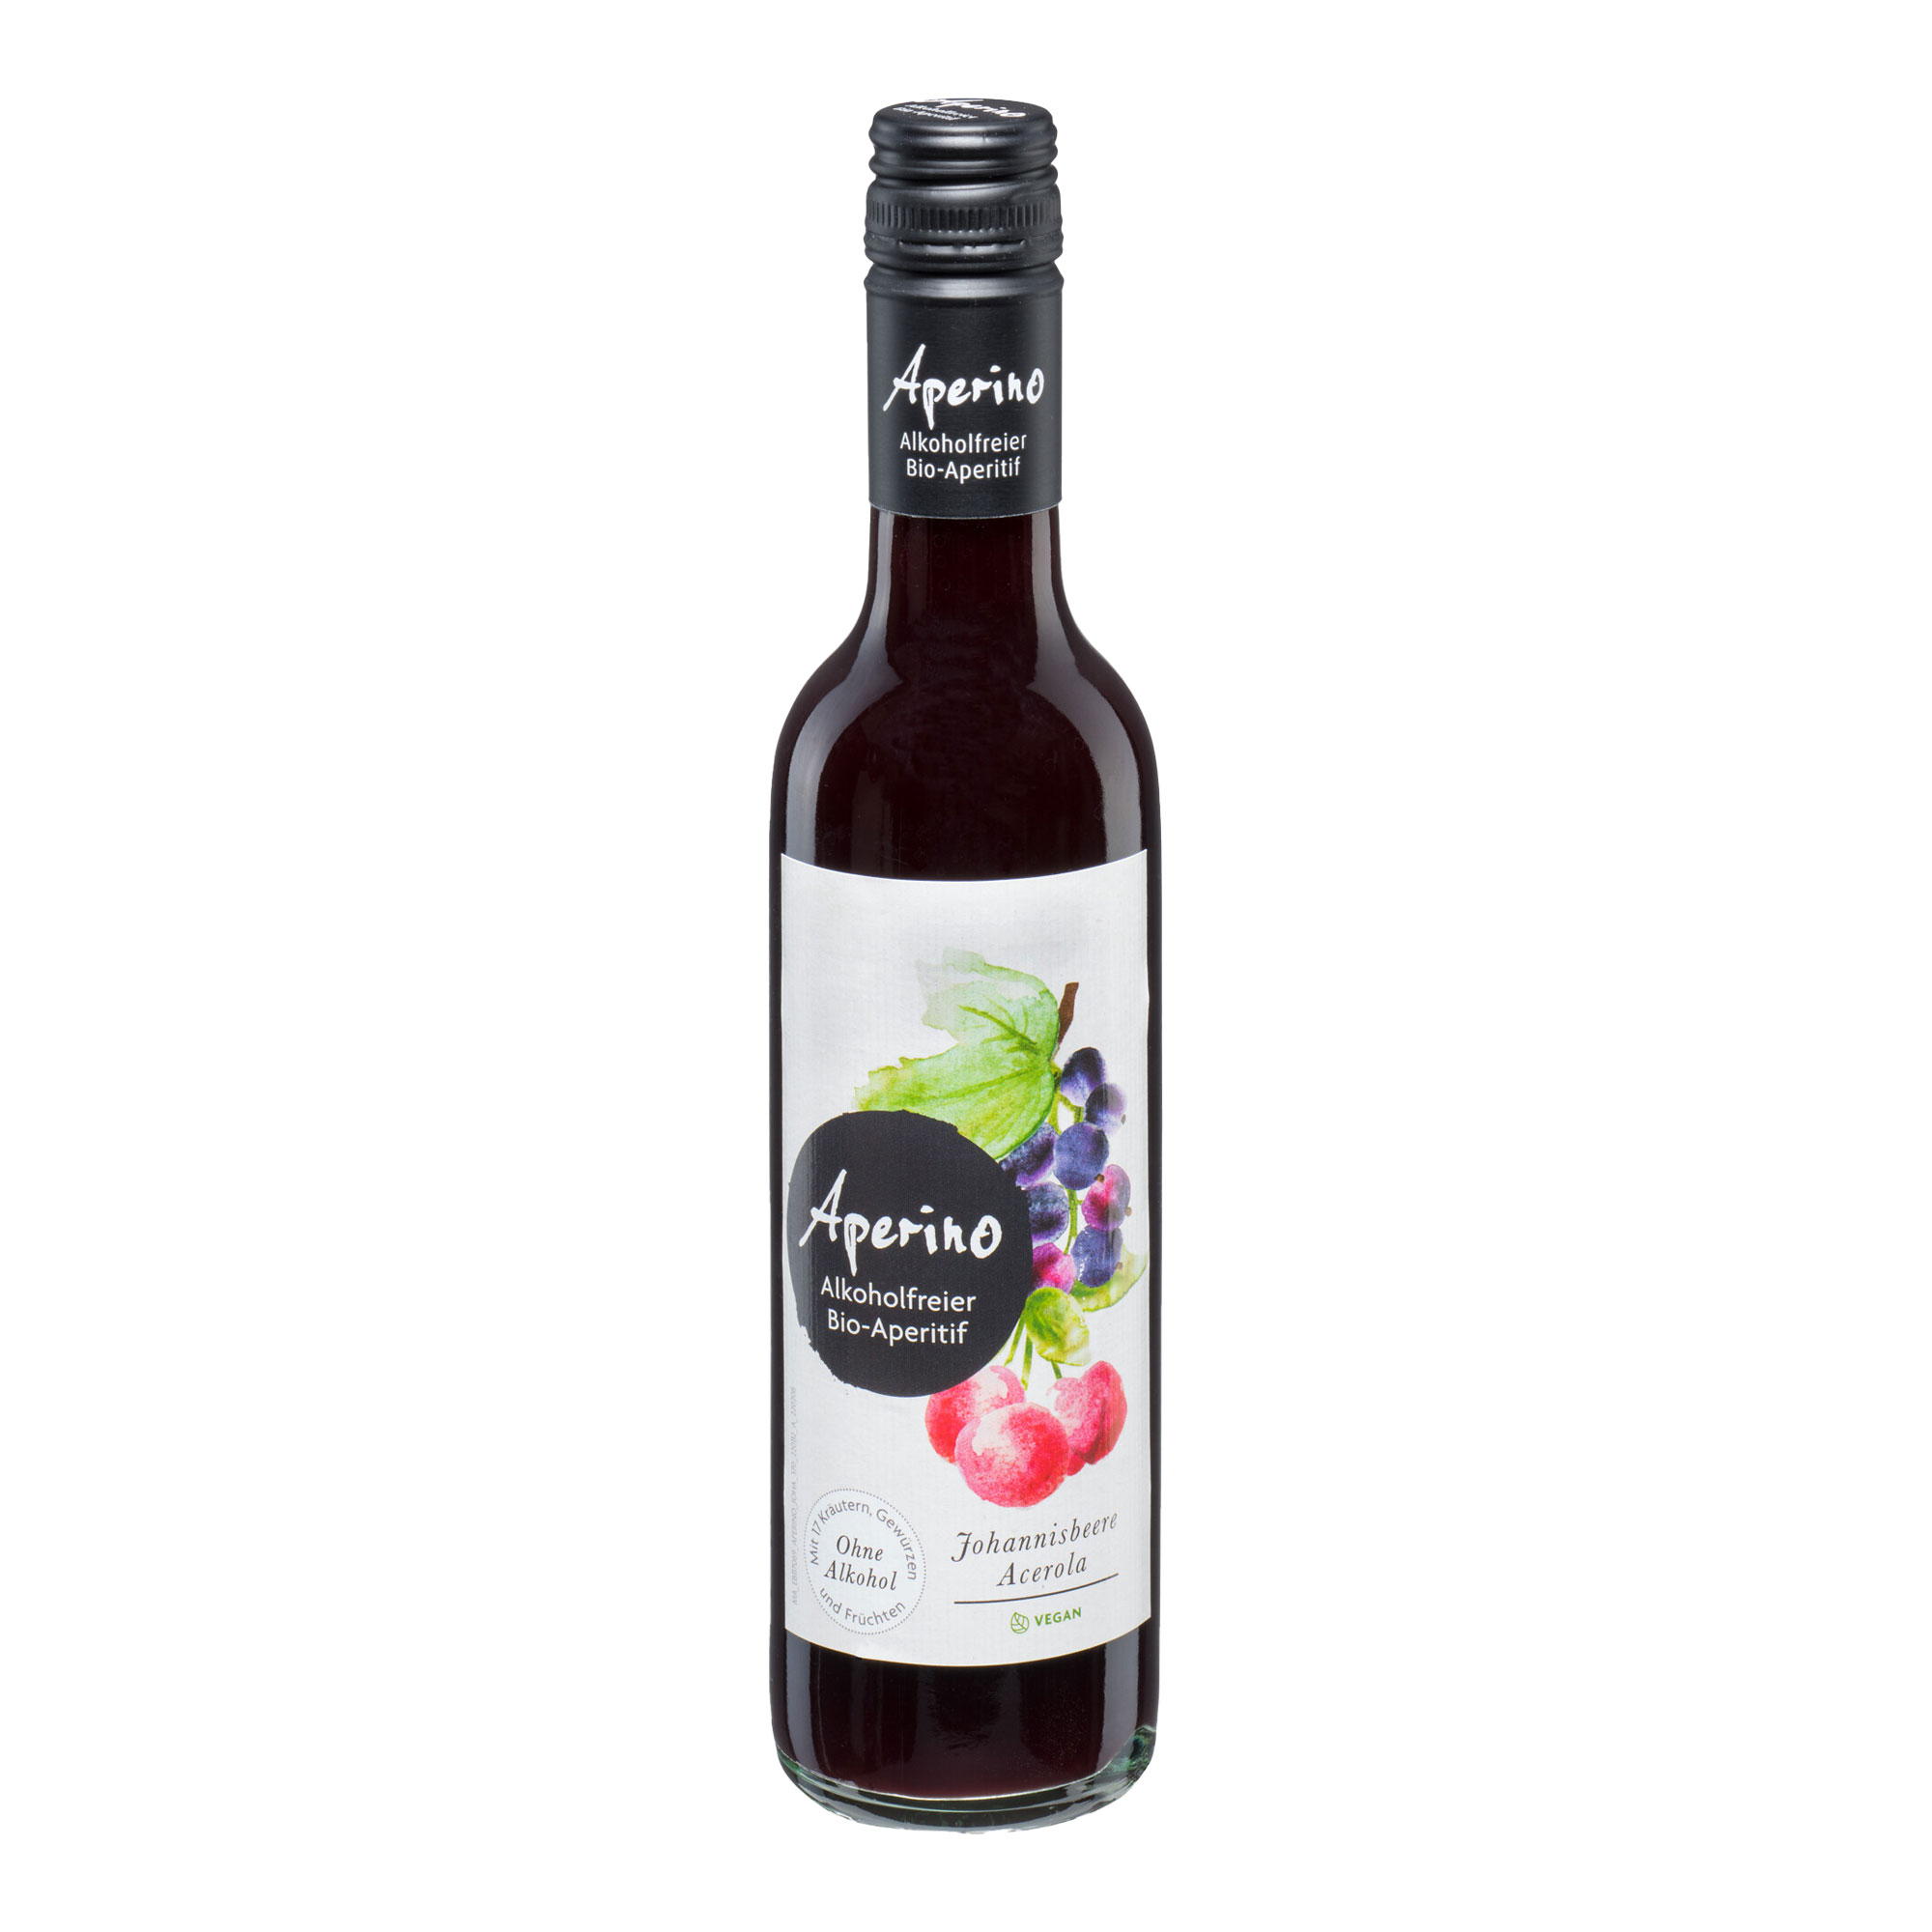 Alkoholfreier Bio-Aperitif. Mit 17 Kräutern, Gewürzen und Früchten.